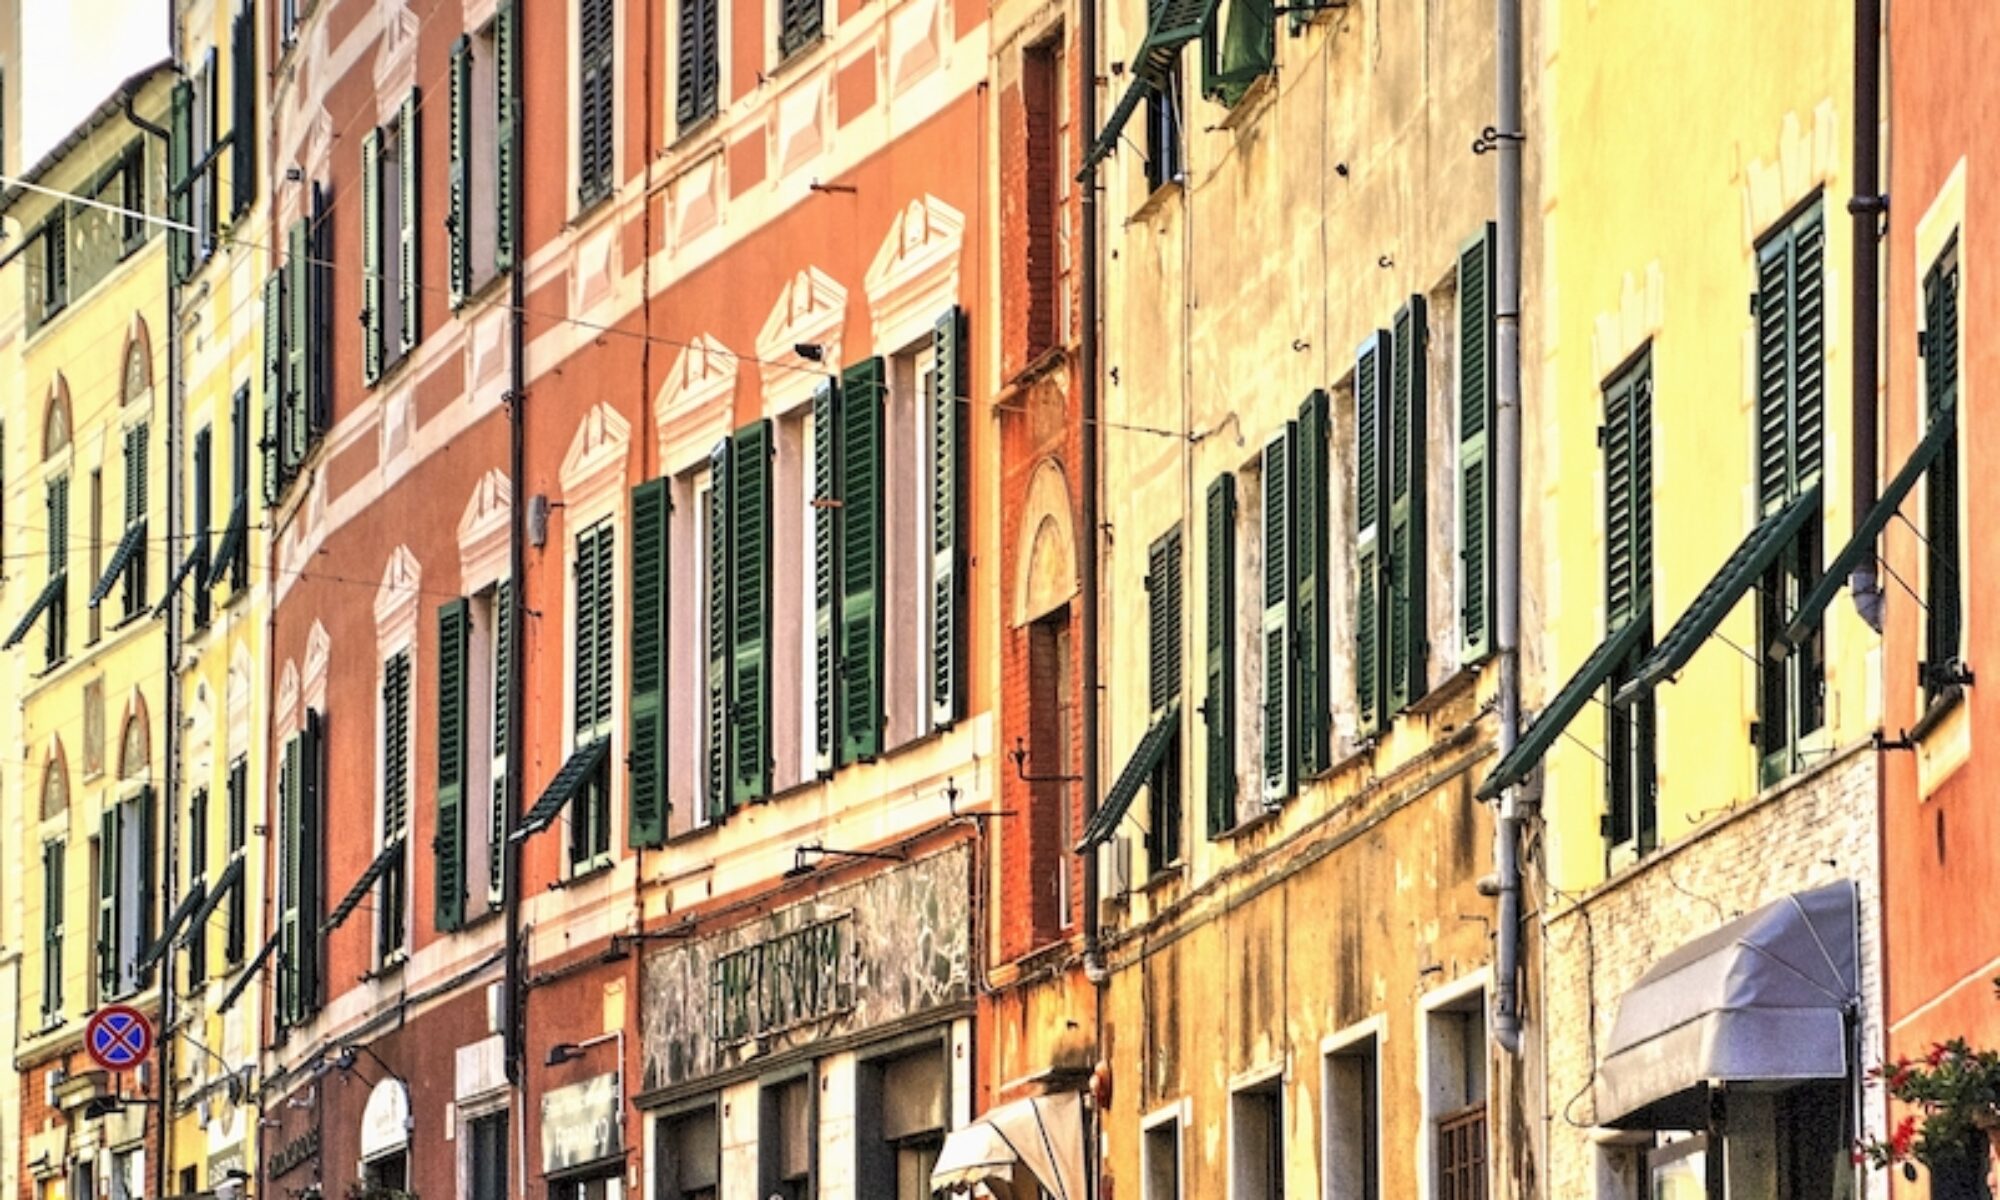 Le alte case colorate nella stretta via Marco Sala a Genova Nervi